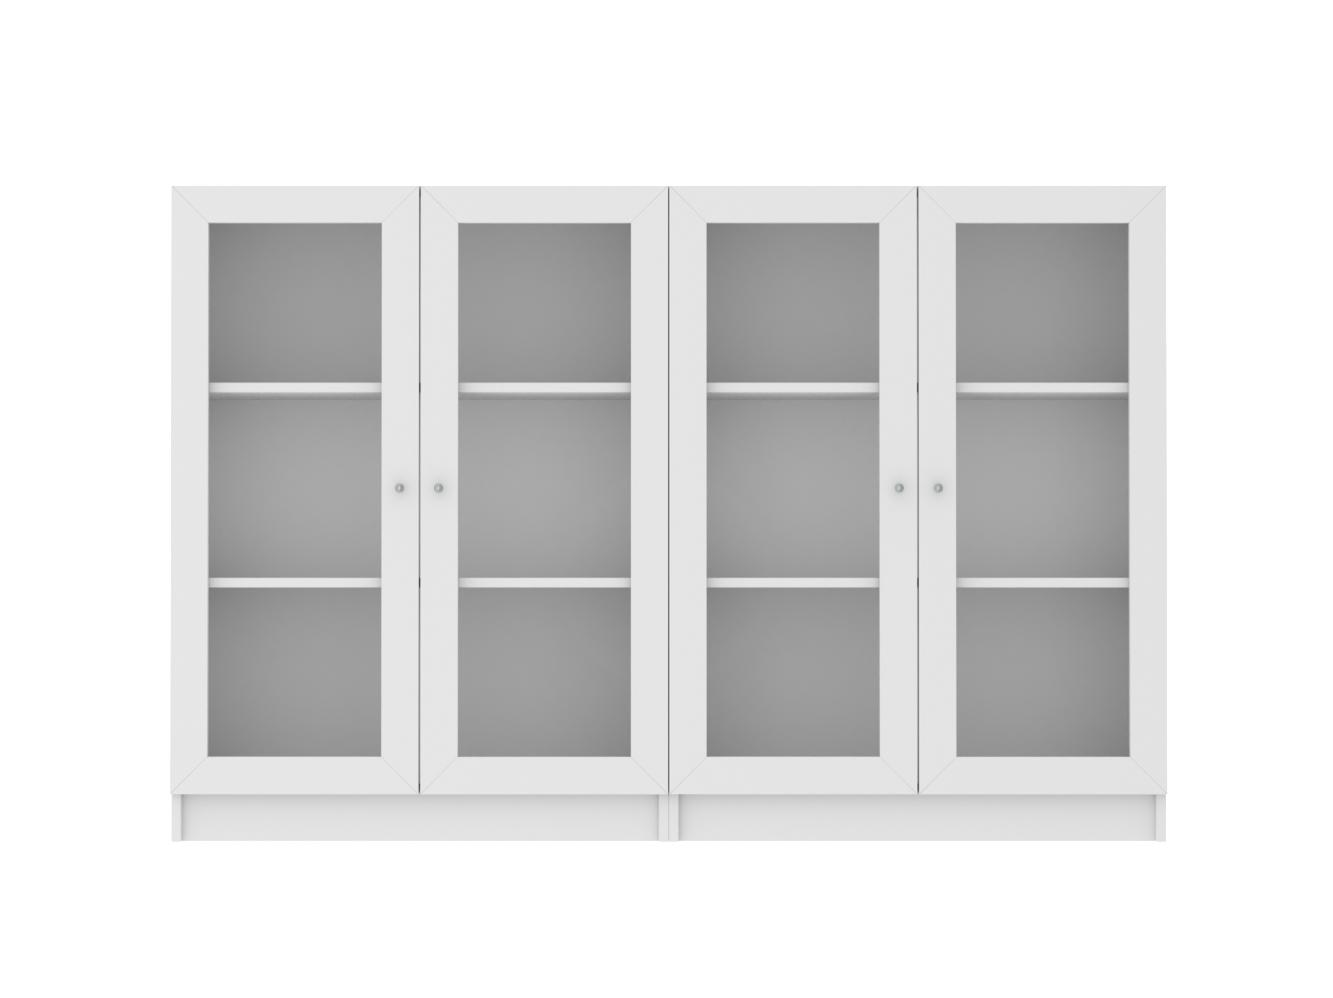 Изображение товара Книжный шкаф Билли 328 white ИКЕА (IKEA), 160x30x106 см на сайте adeta.ru